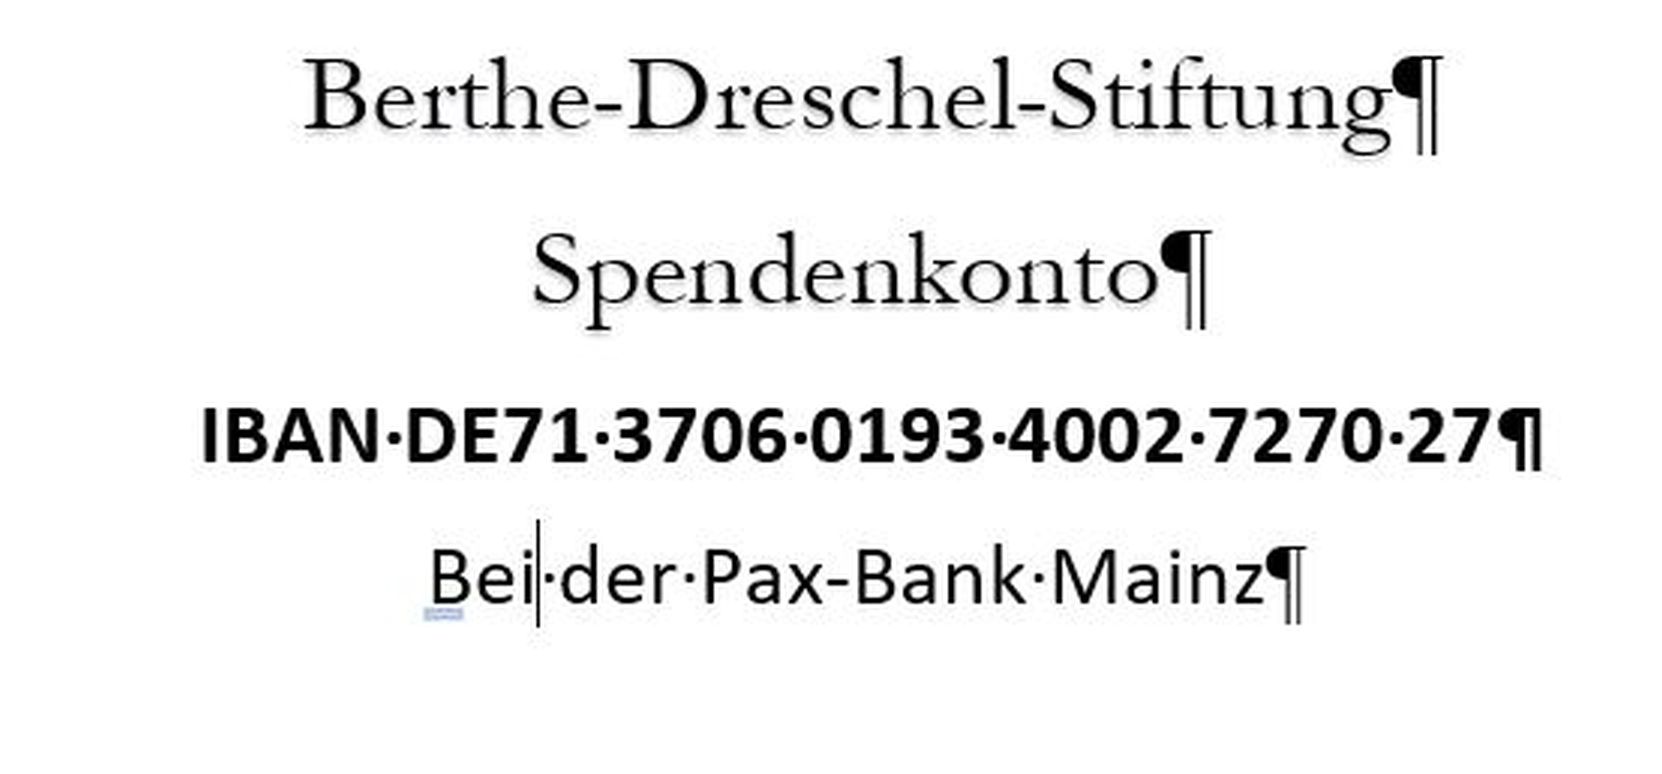 Spendenkonto-Berthe-Dreschel-Stiftung (c) --